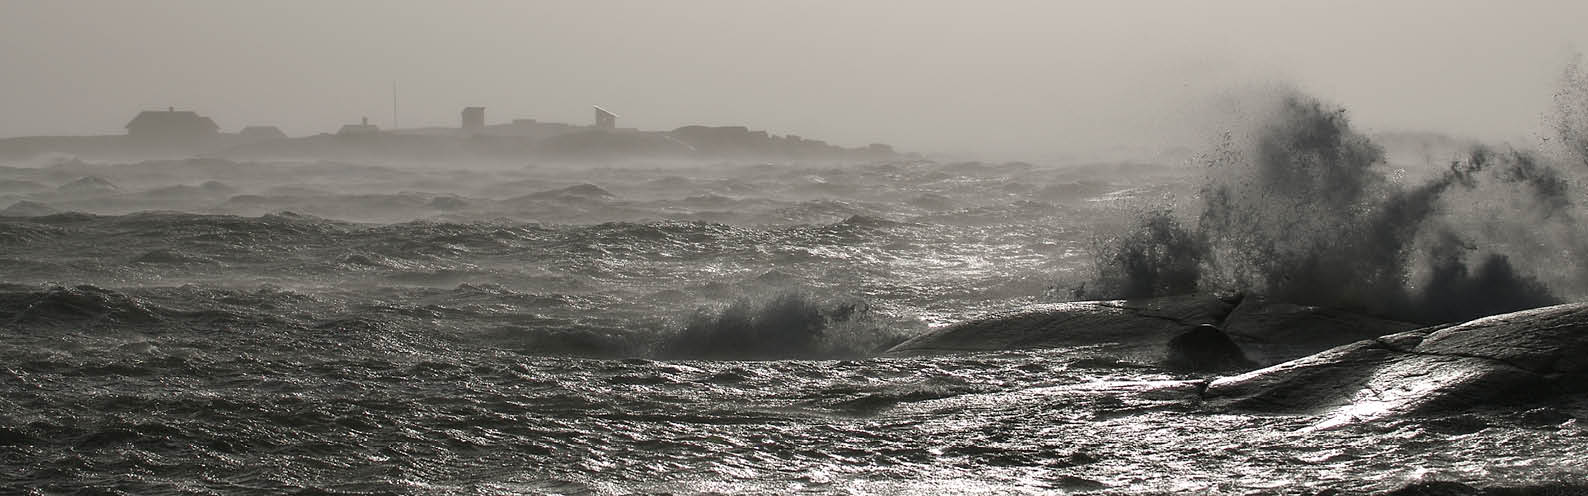 Storm,hav,varberg